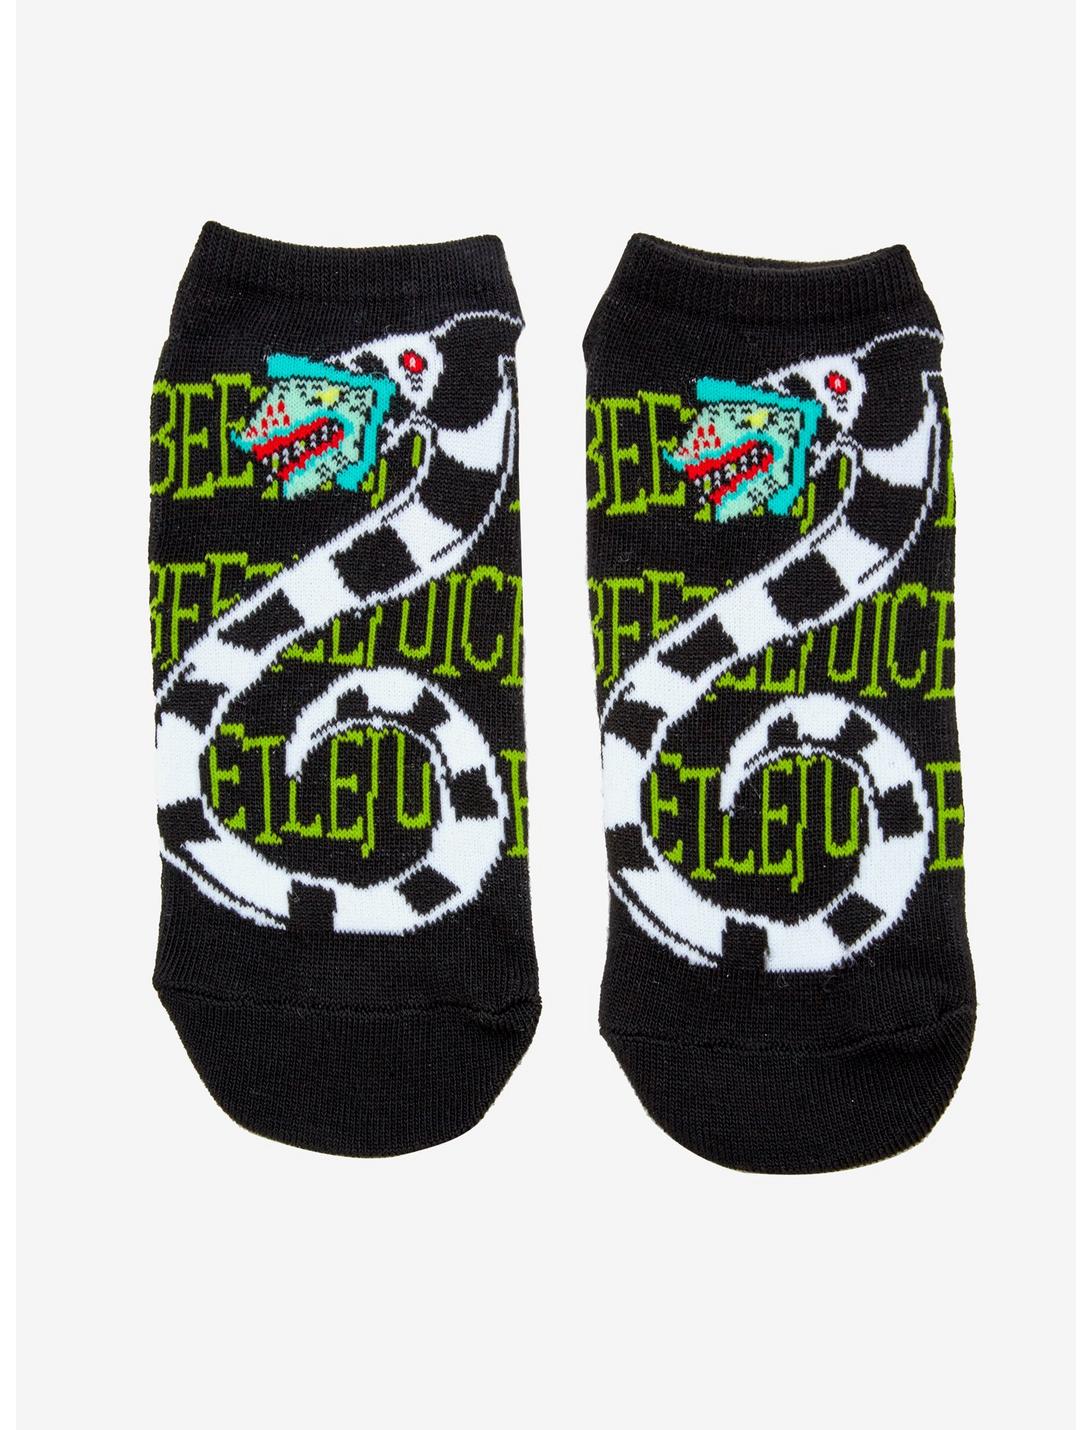 Beeltejuice Sandworm No-Show Socks, , hi-res